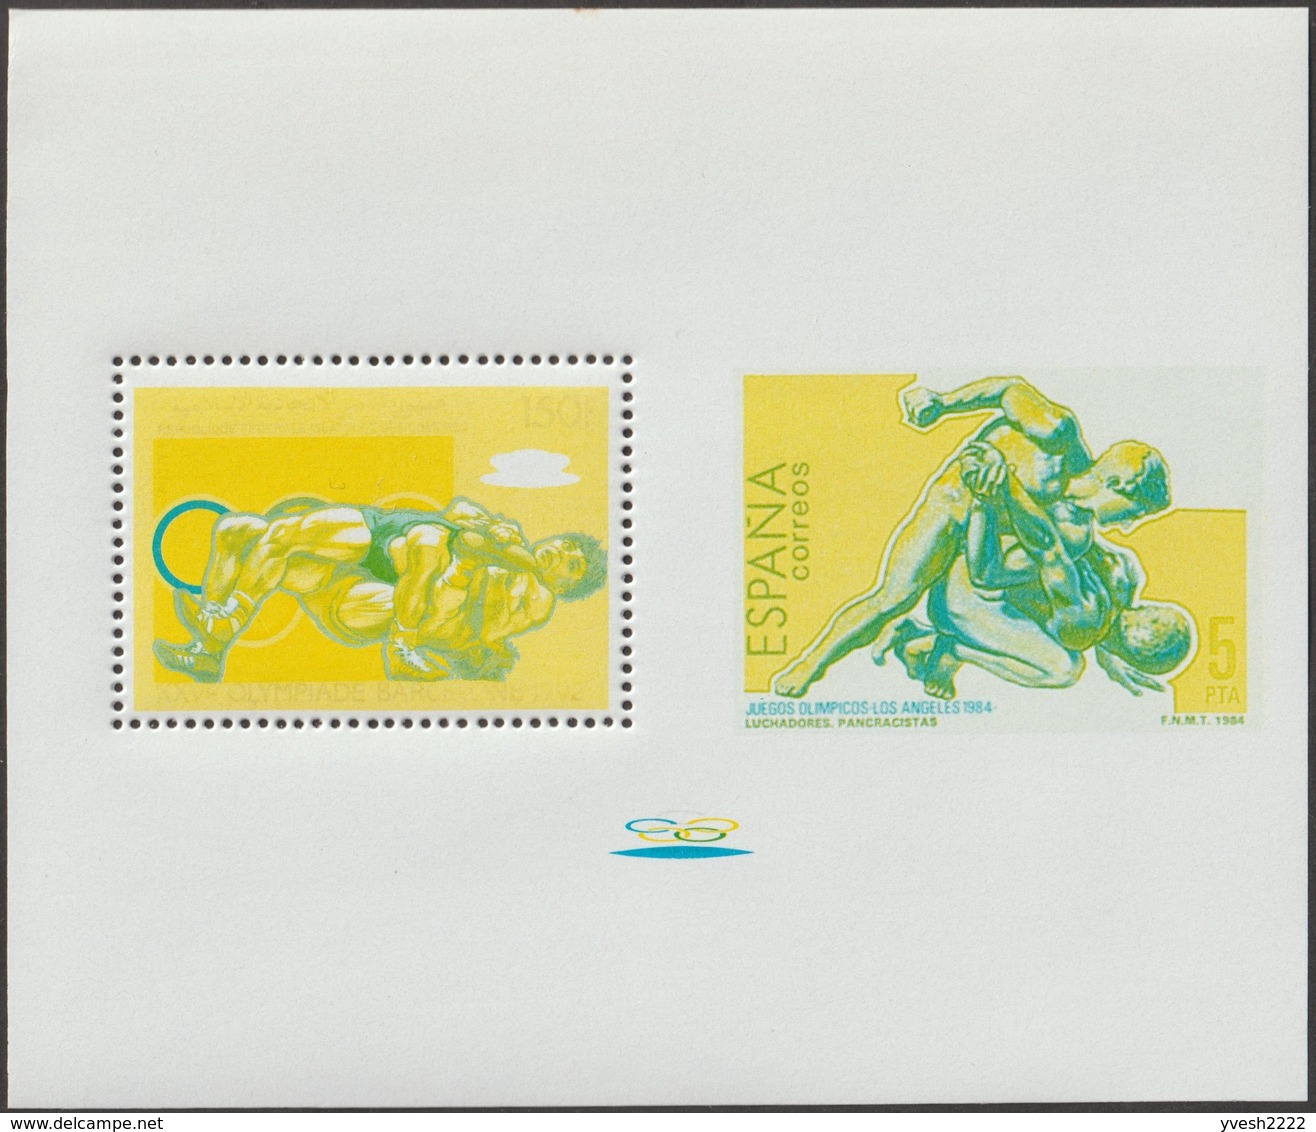 Comores 1988 Y&T 467 Michel 828. 13 essais, jeux olympiques de Barcelone 1992. Timbre sur timbre, lutte